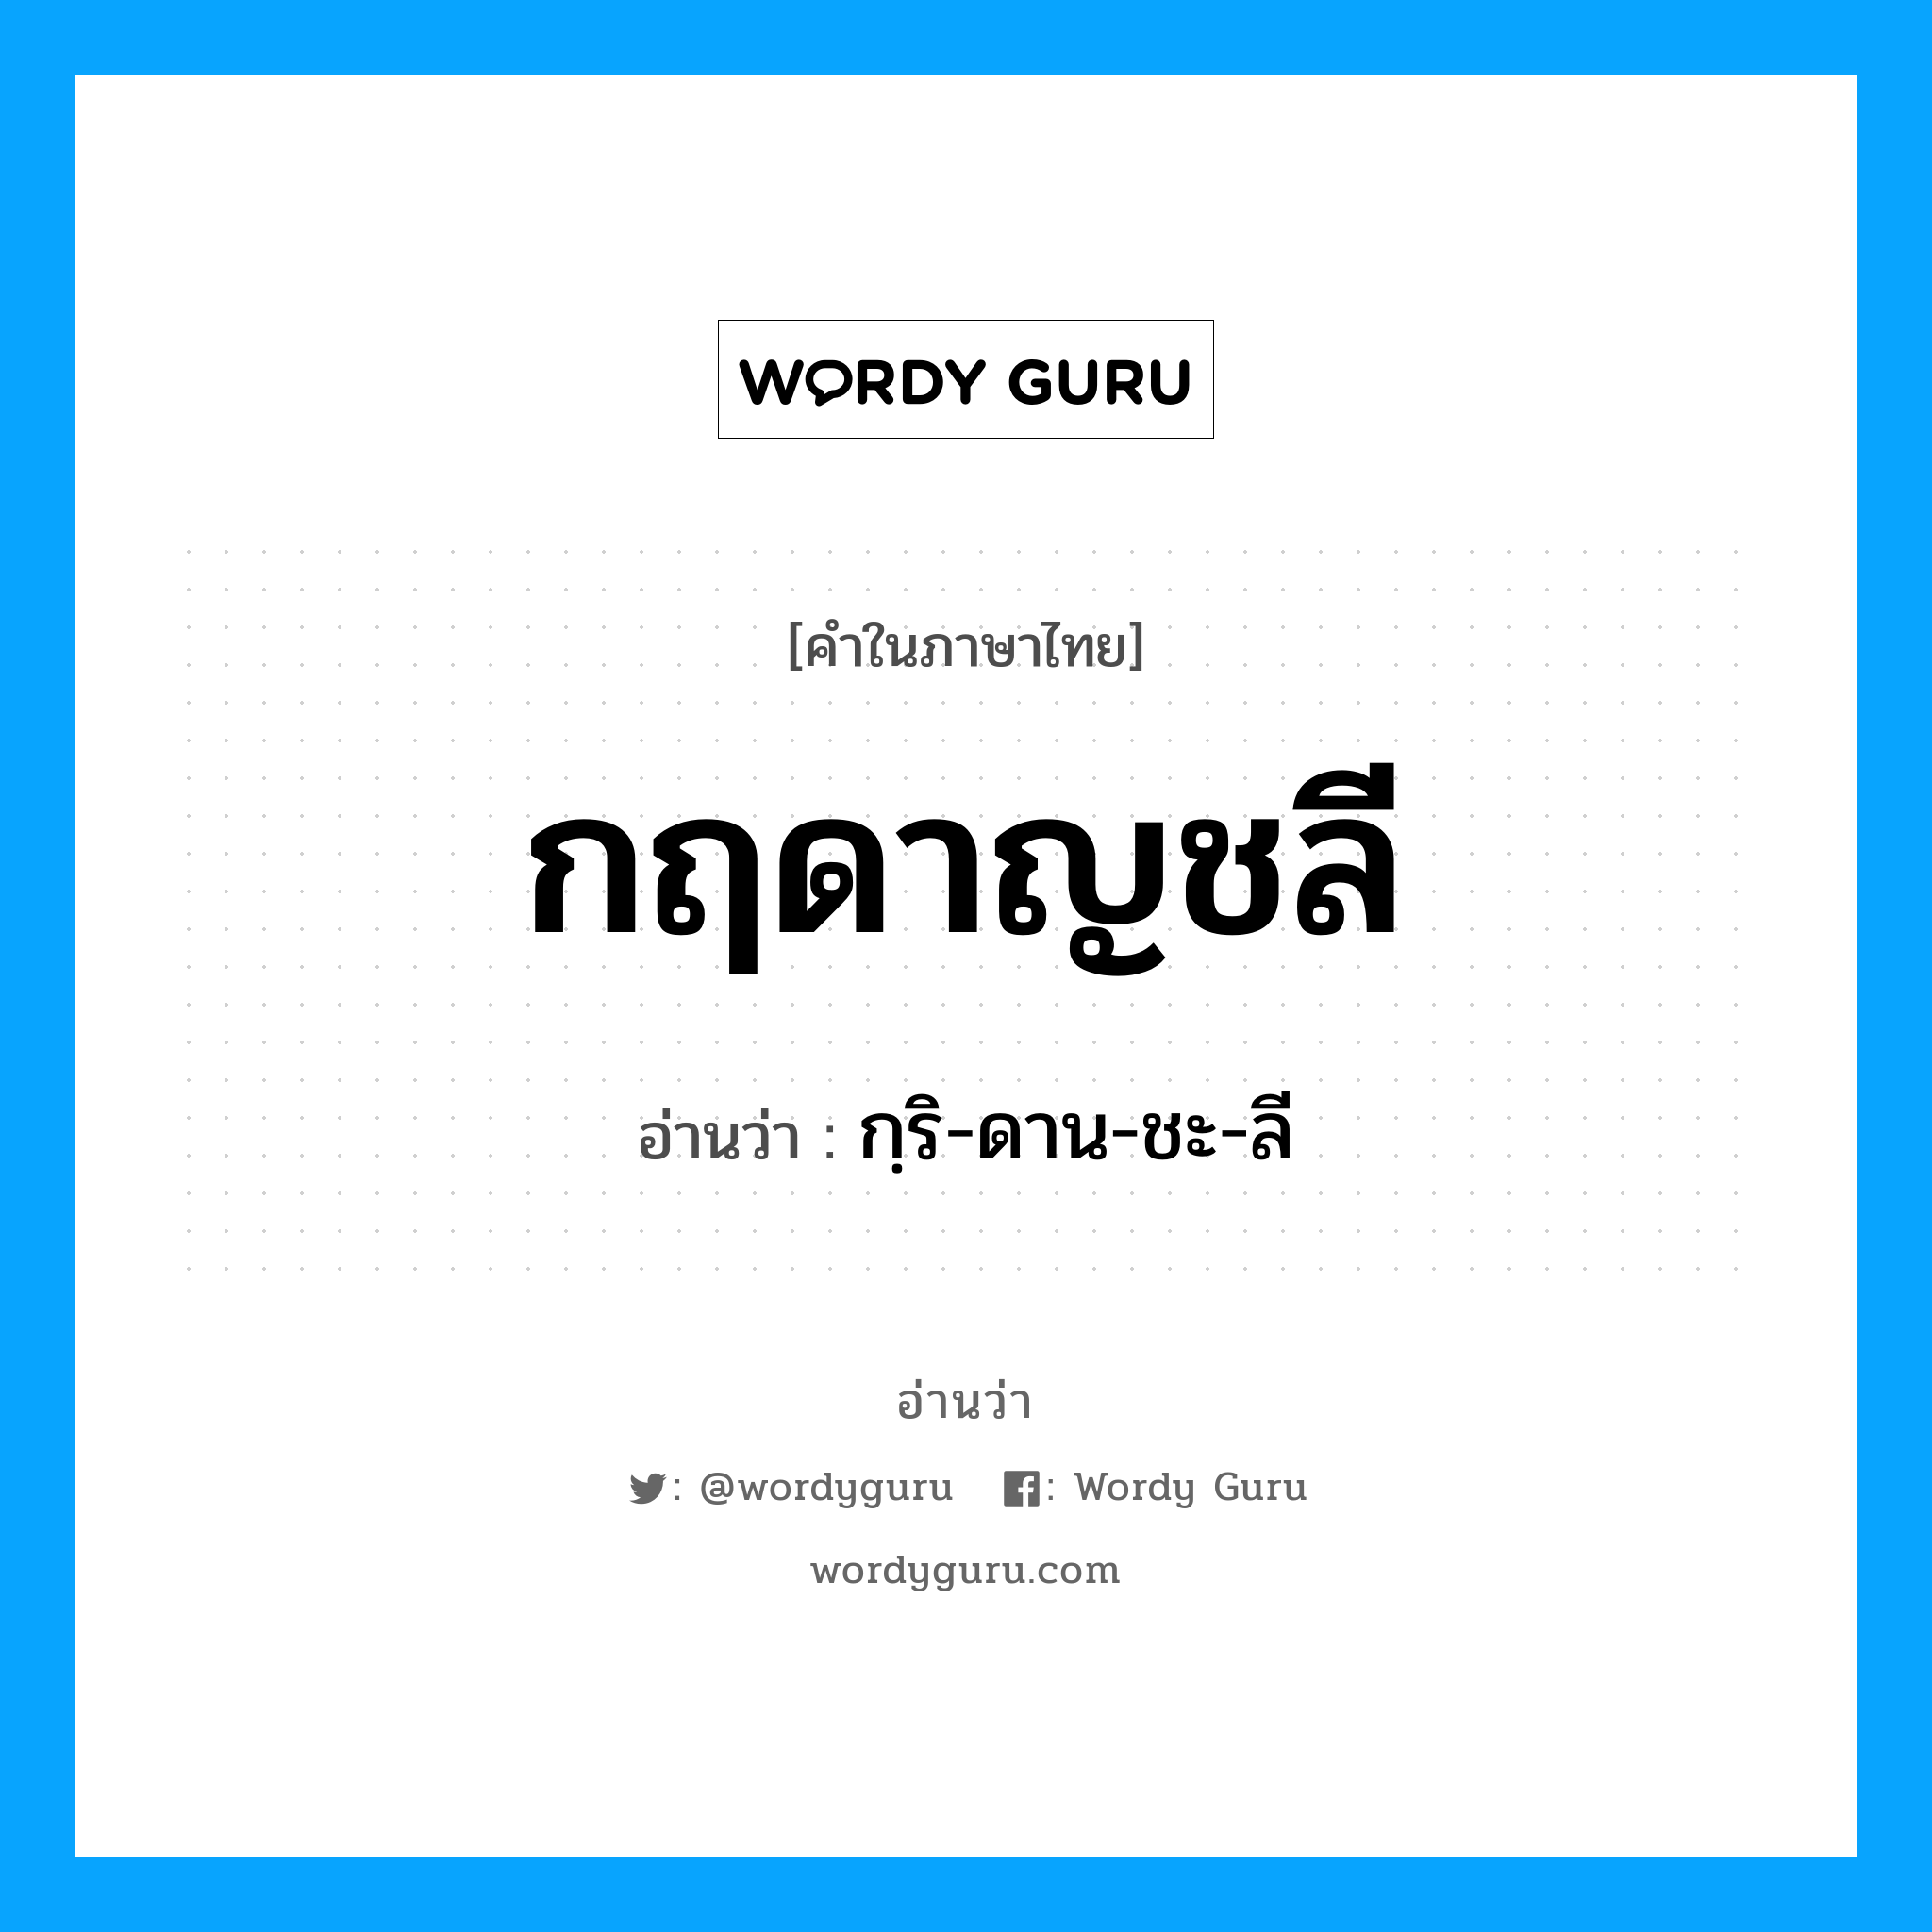 กฺริ-ดาน-ชะ-ลี เป็นคำอ่านของคำไหน?, คำในภาษาไทย กฺริ-ดาน-ชะ-ลี อ่านว่า กฤดาญชลี